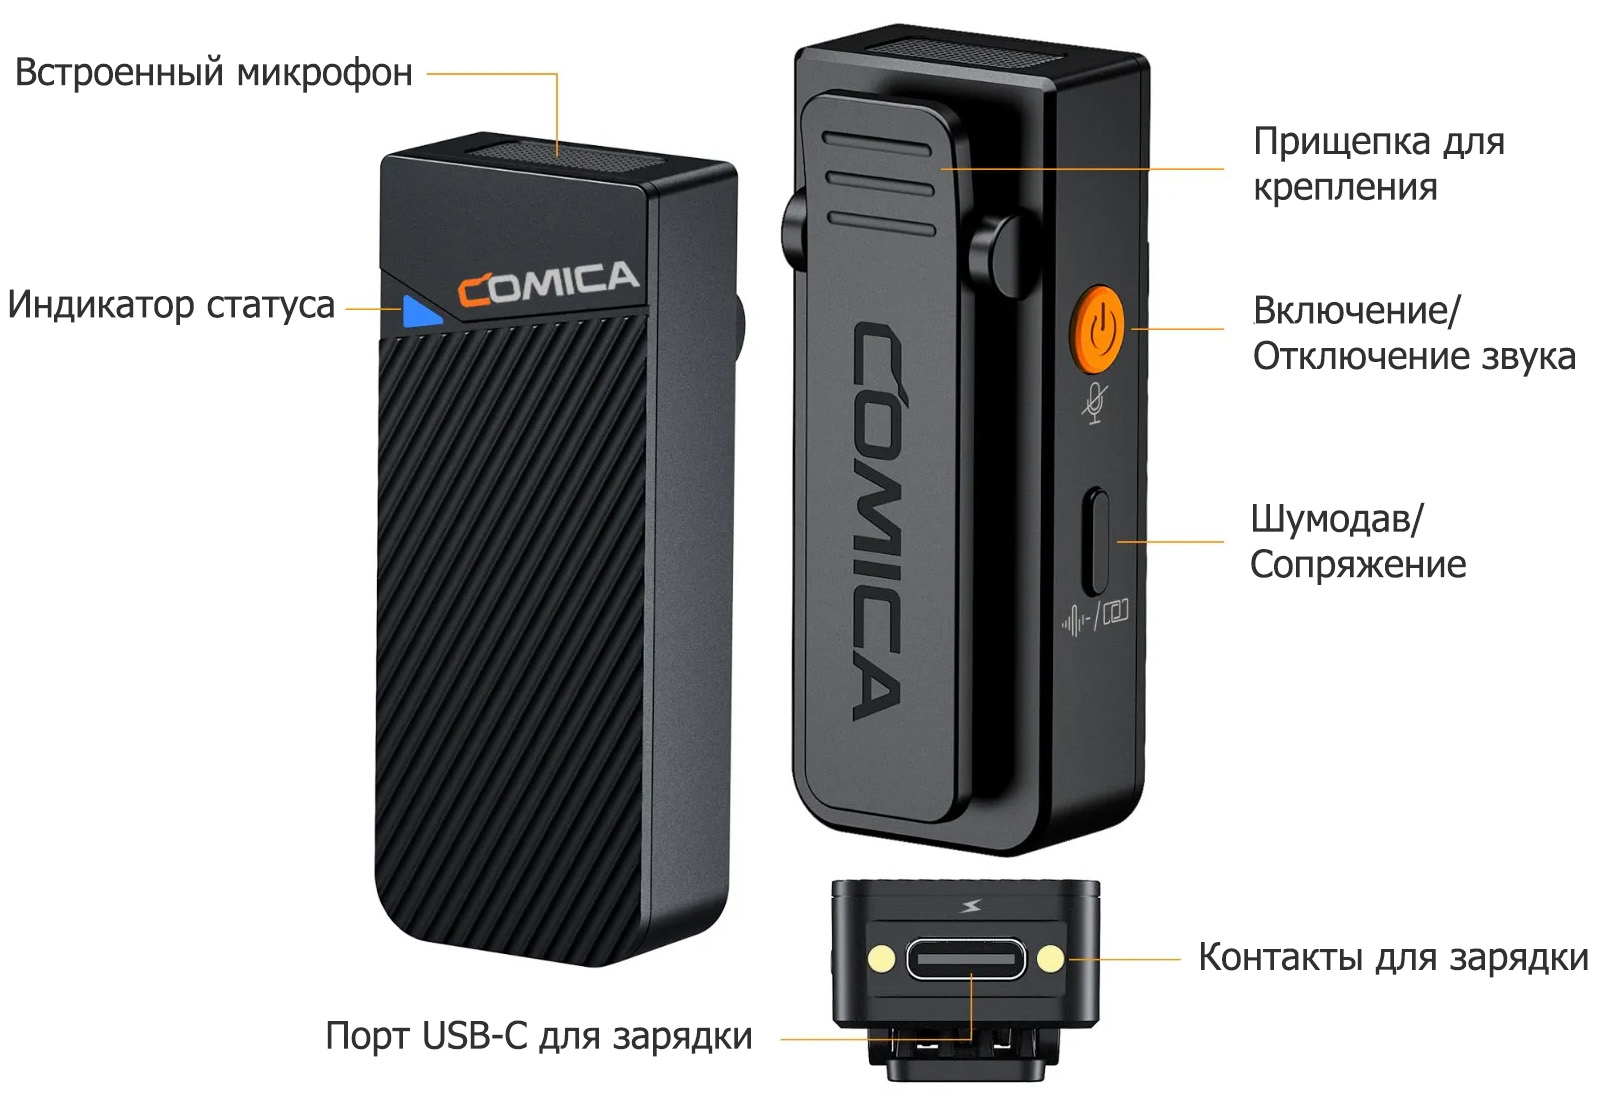 Беспроводной микрофон Comica Vimo C3 описание элементов передатчика